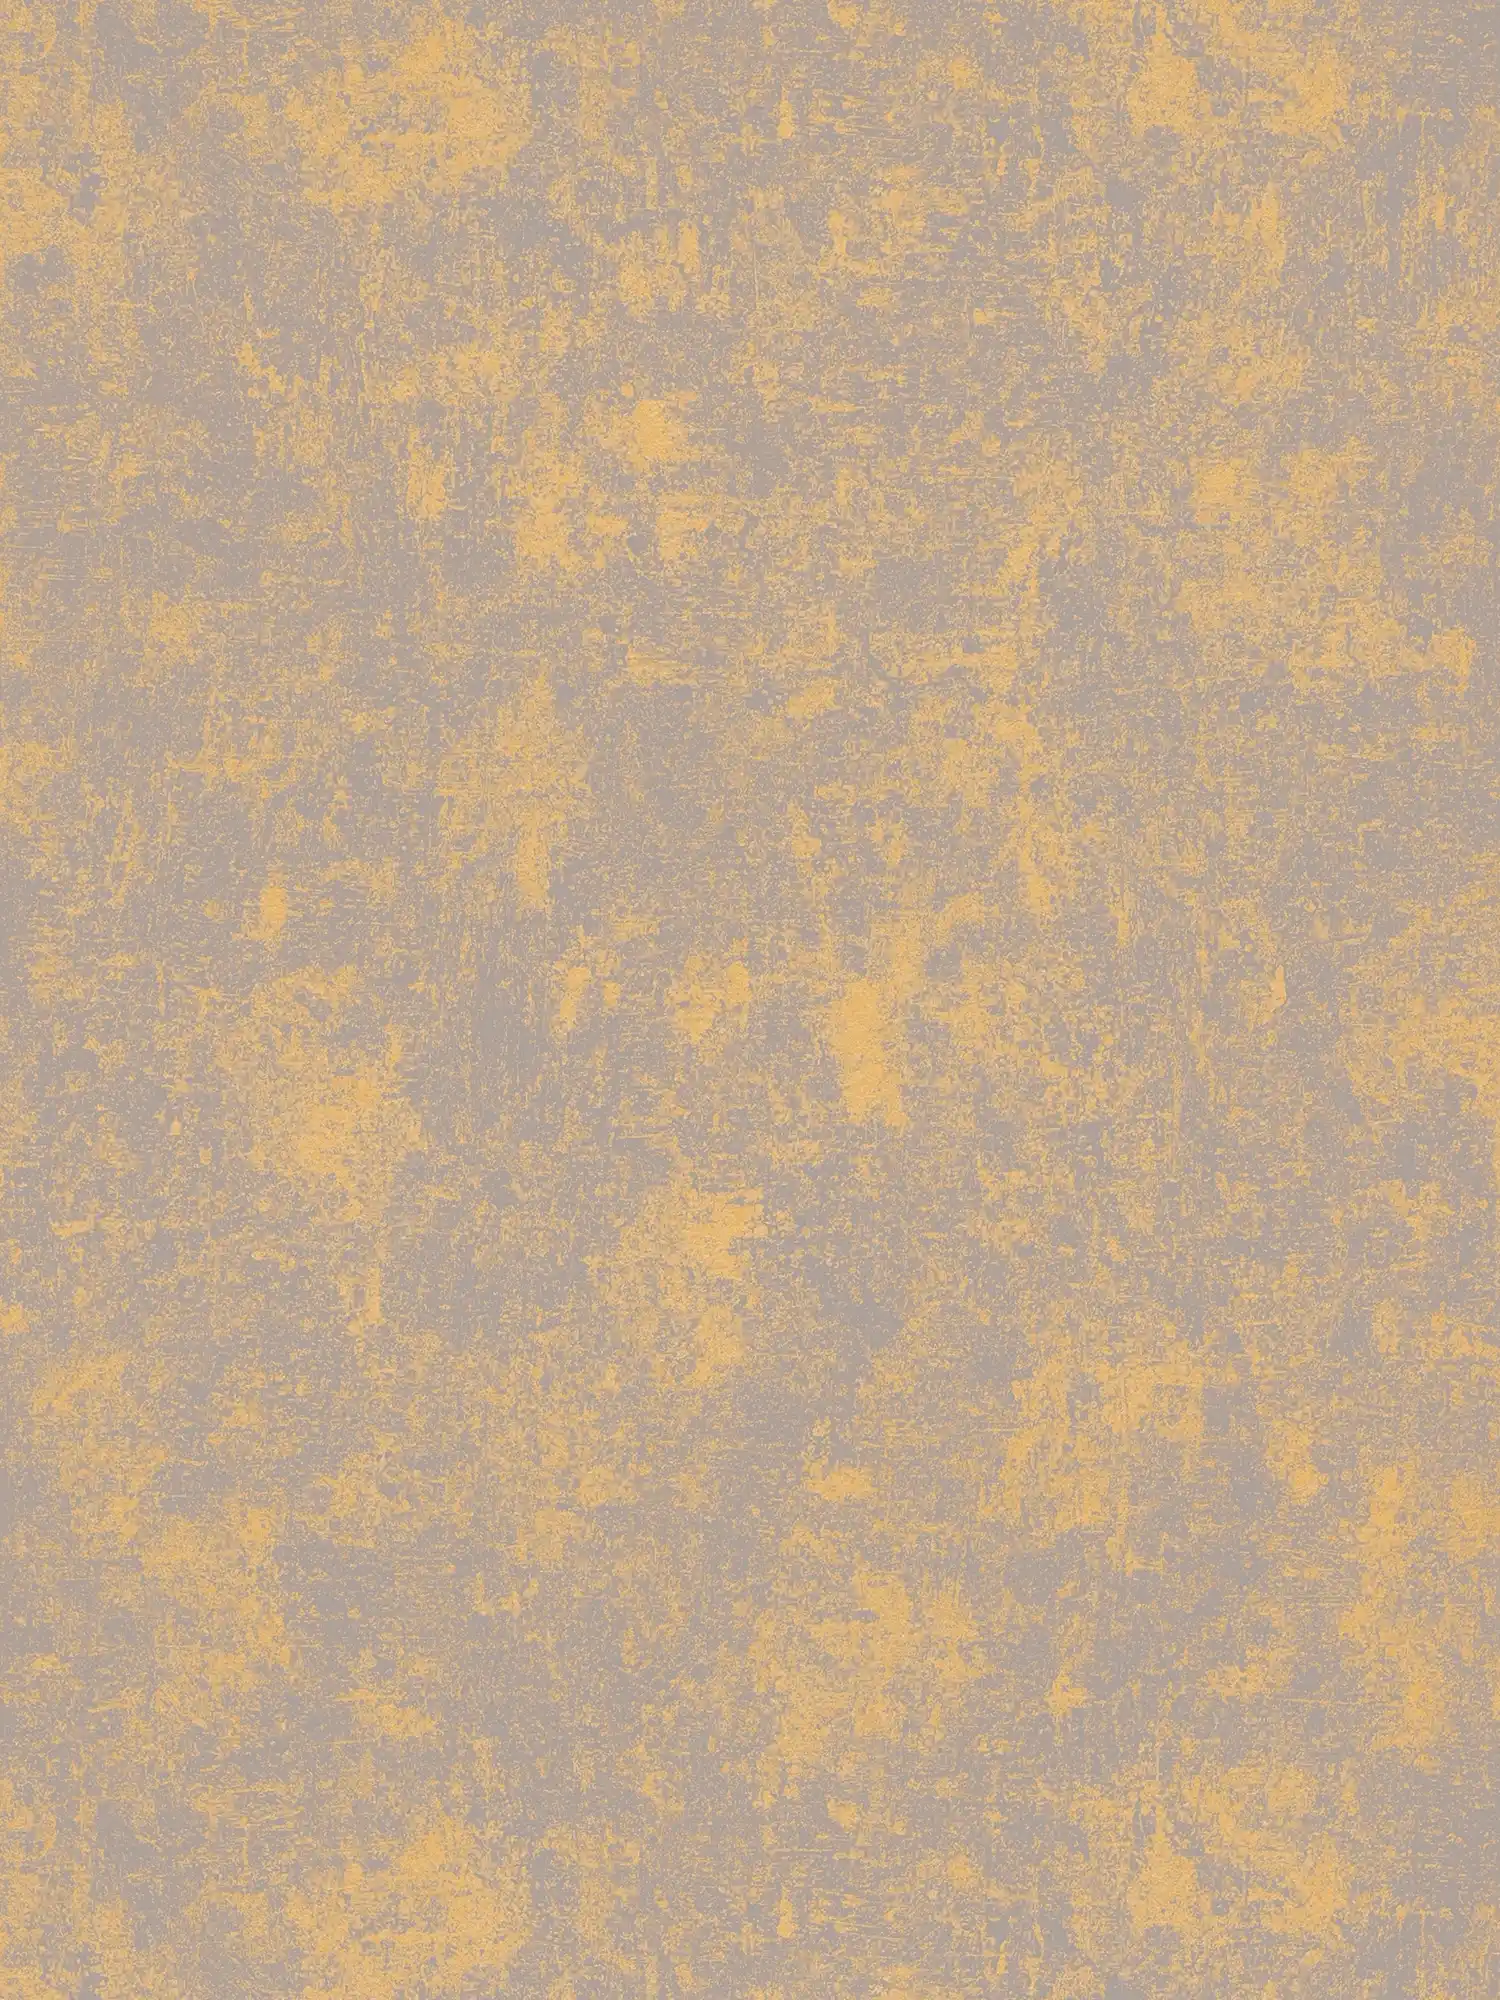 Carta da parati lucida e metallizzata liscia - oro, grigio, metallizzato
